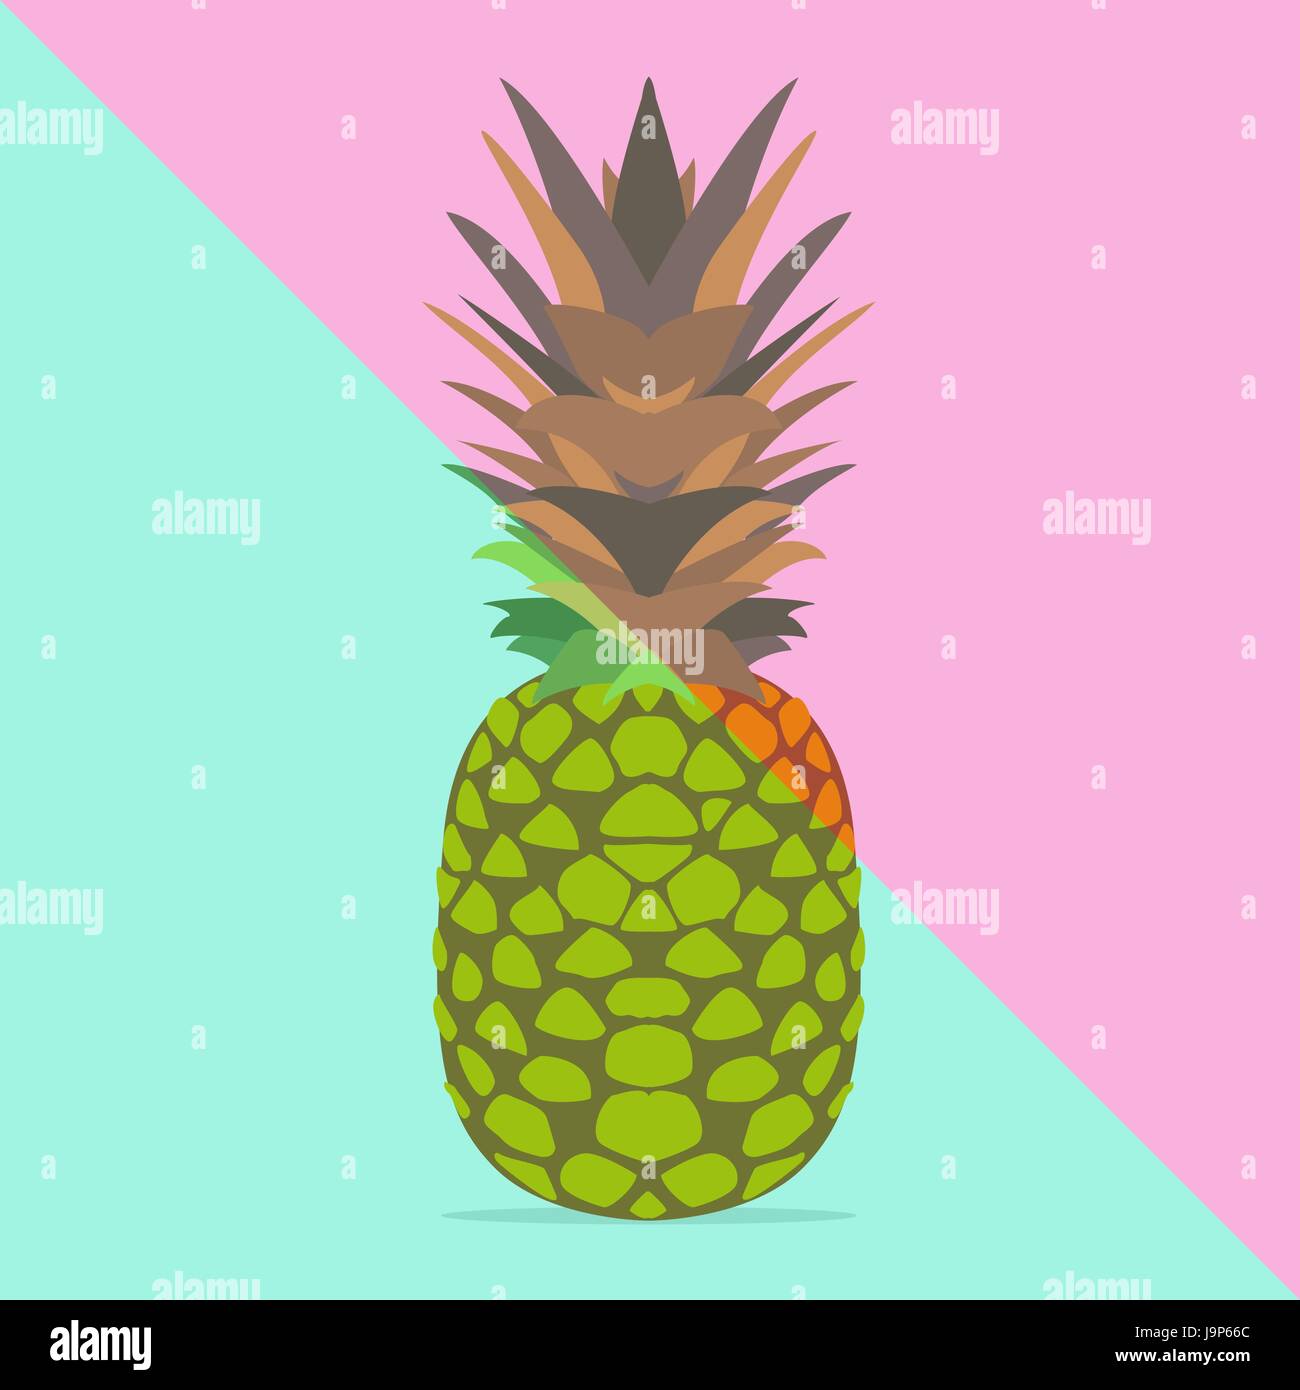 Ananas alla moda con vivaci colori pastello, divertimento estivo. Poster alla moda dello sfondo. Illustrazione Vettoriale